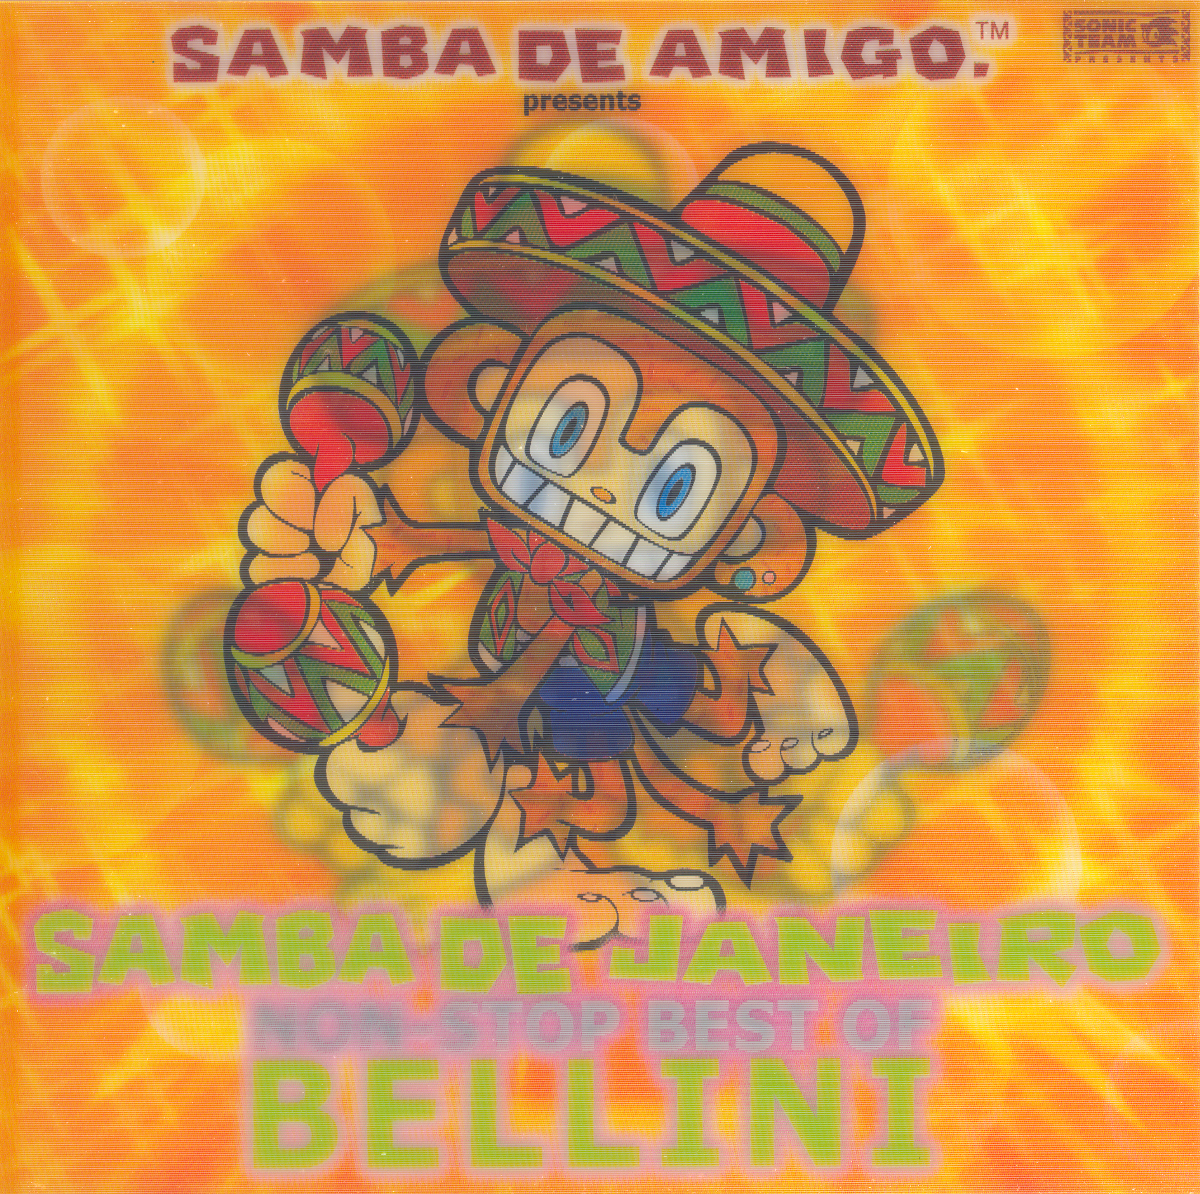 Originais do samba - music non stop